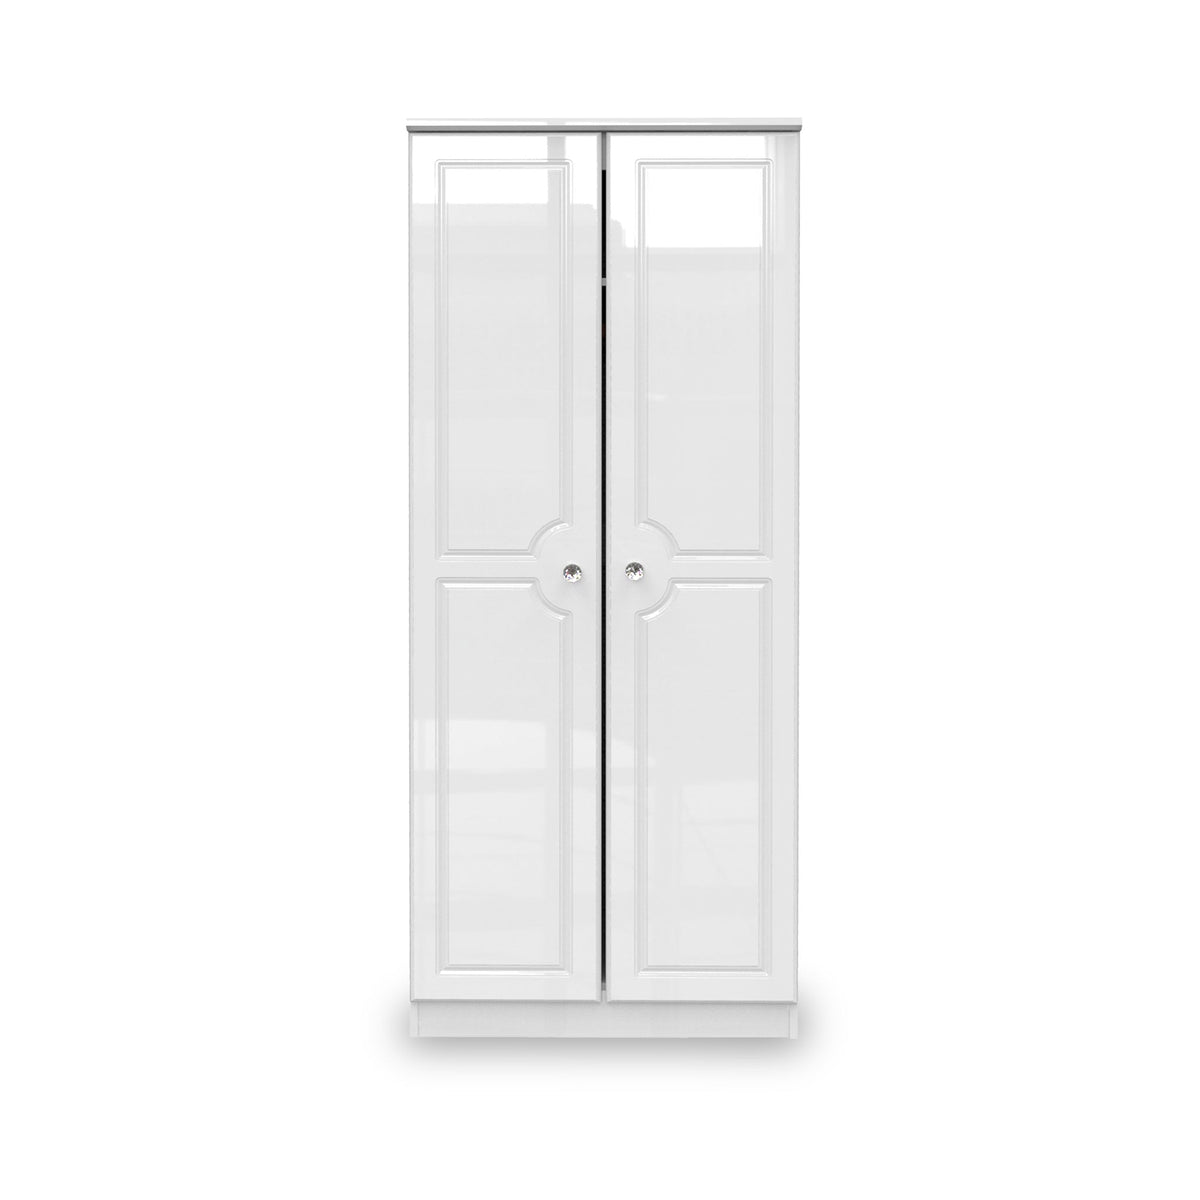 Kinsley White Gloss 2 Door Wardrobe from Roseland